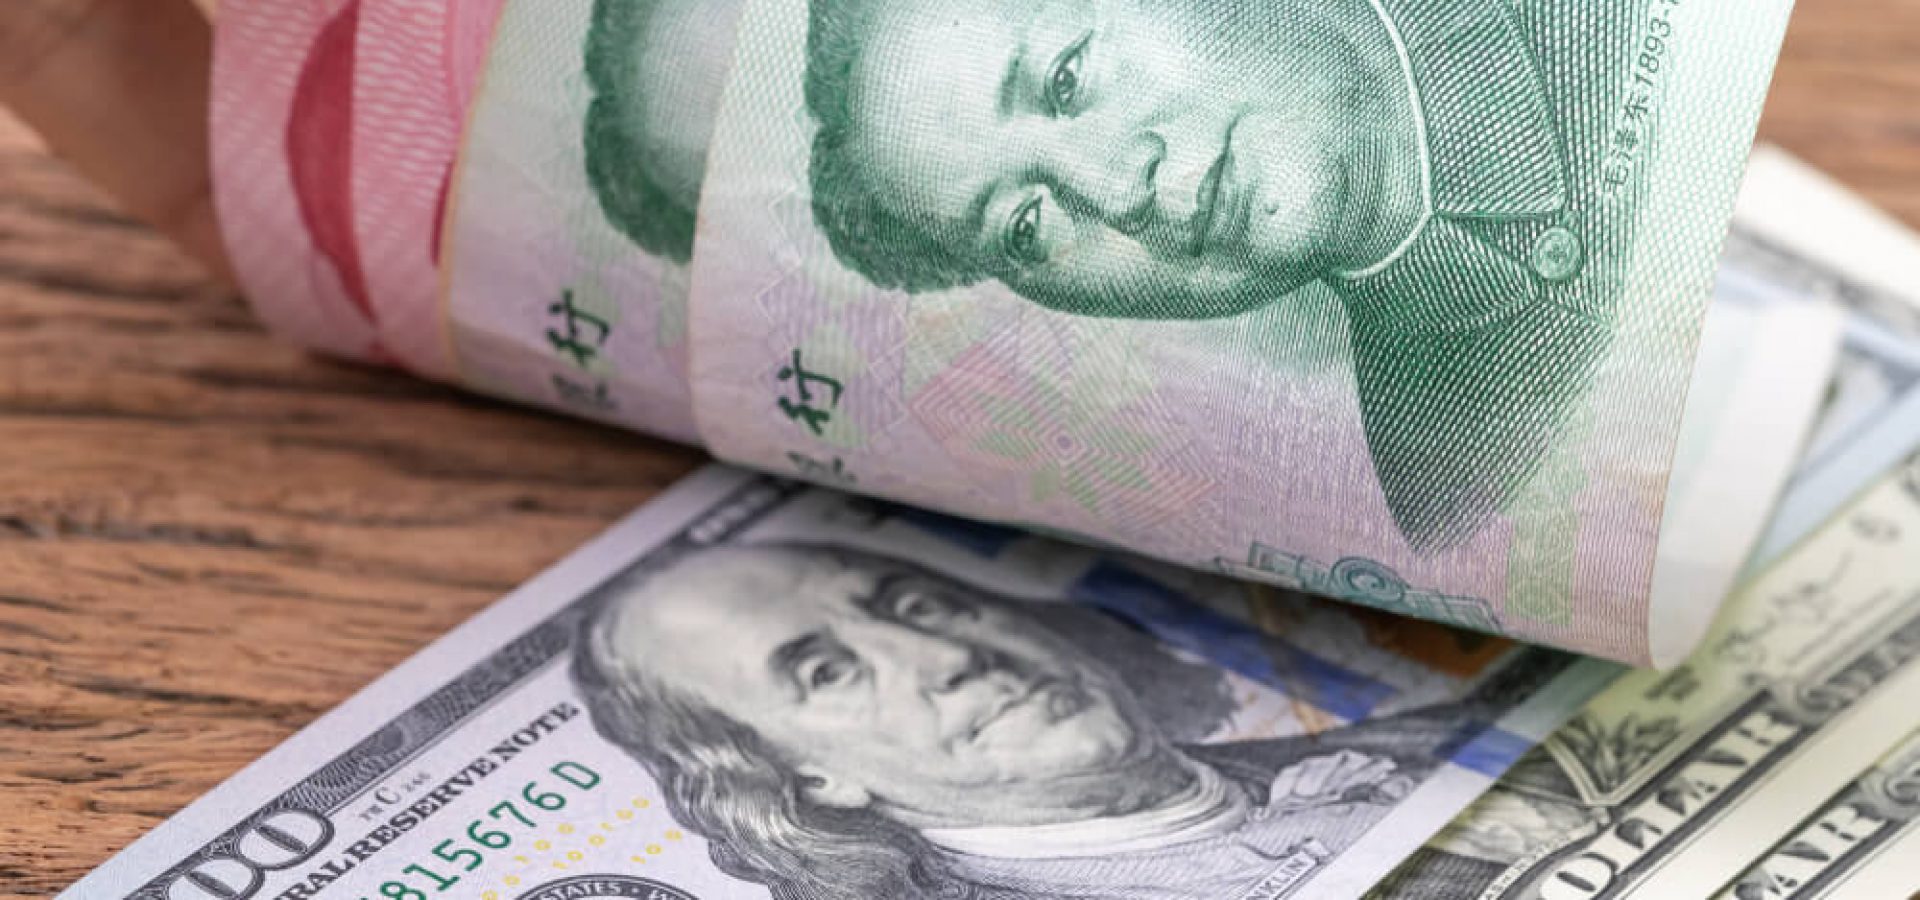 Asian Market: US dollar banknotes face up to Chinese Yuan banknotes